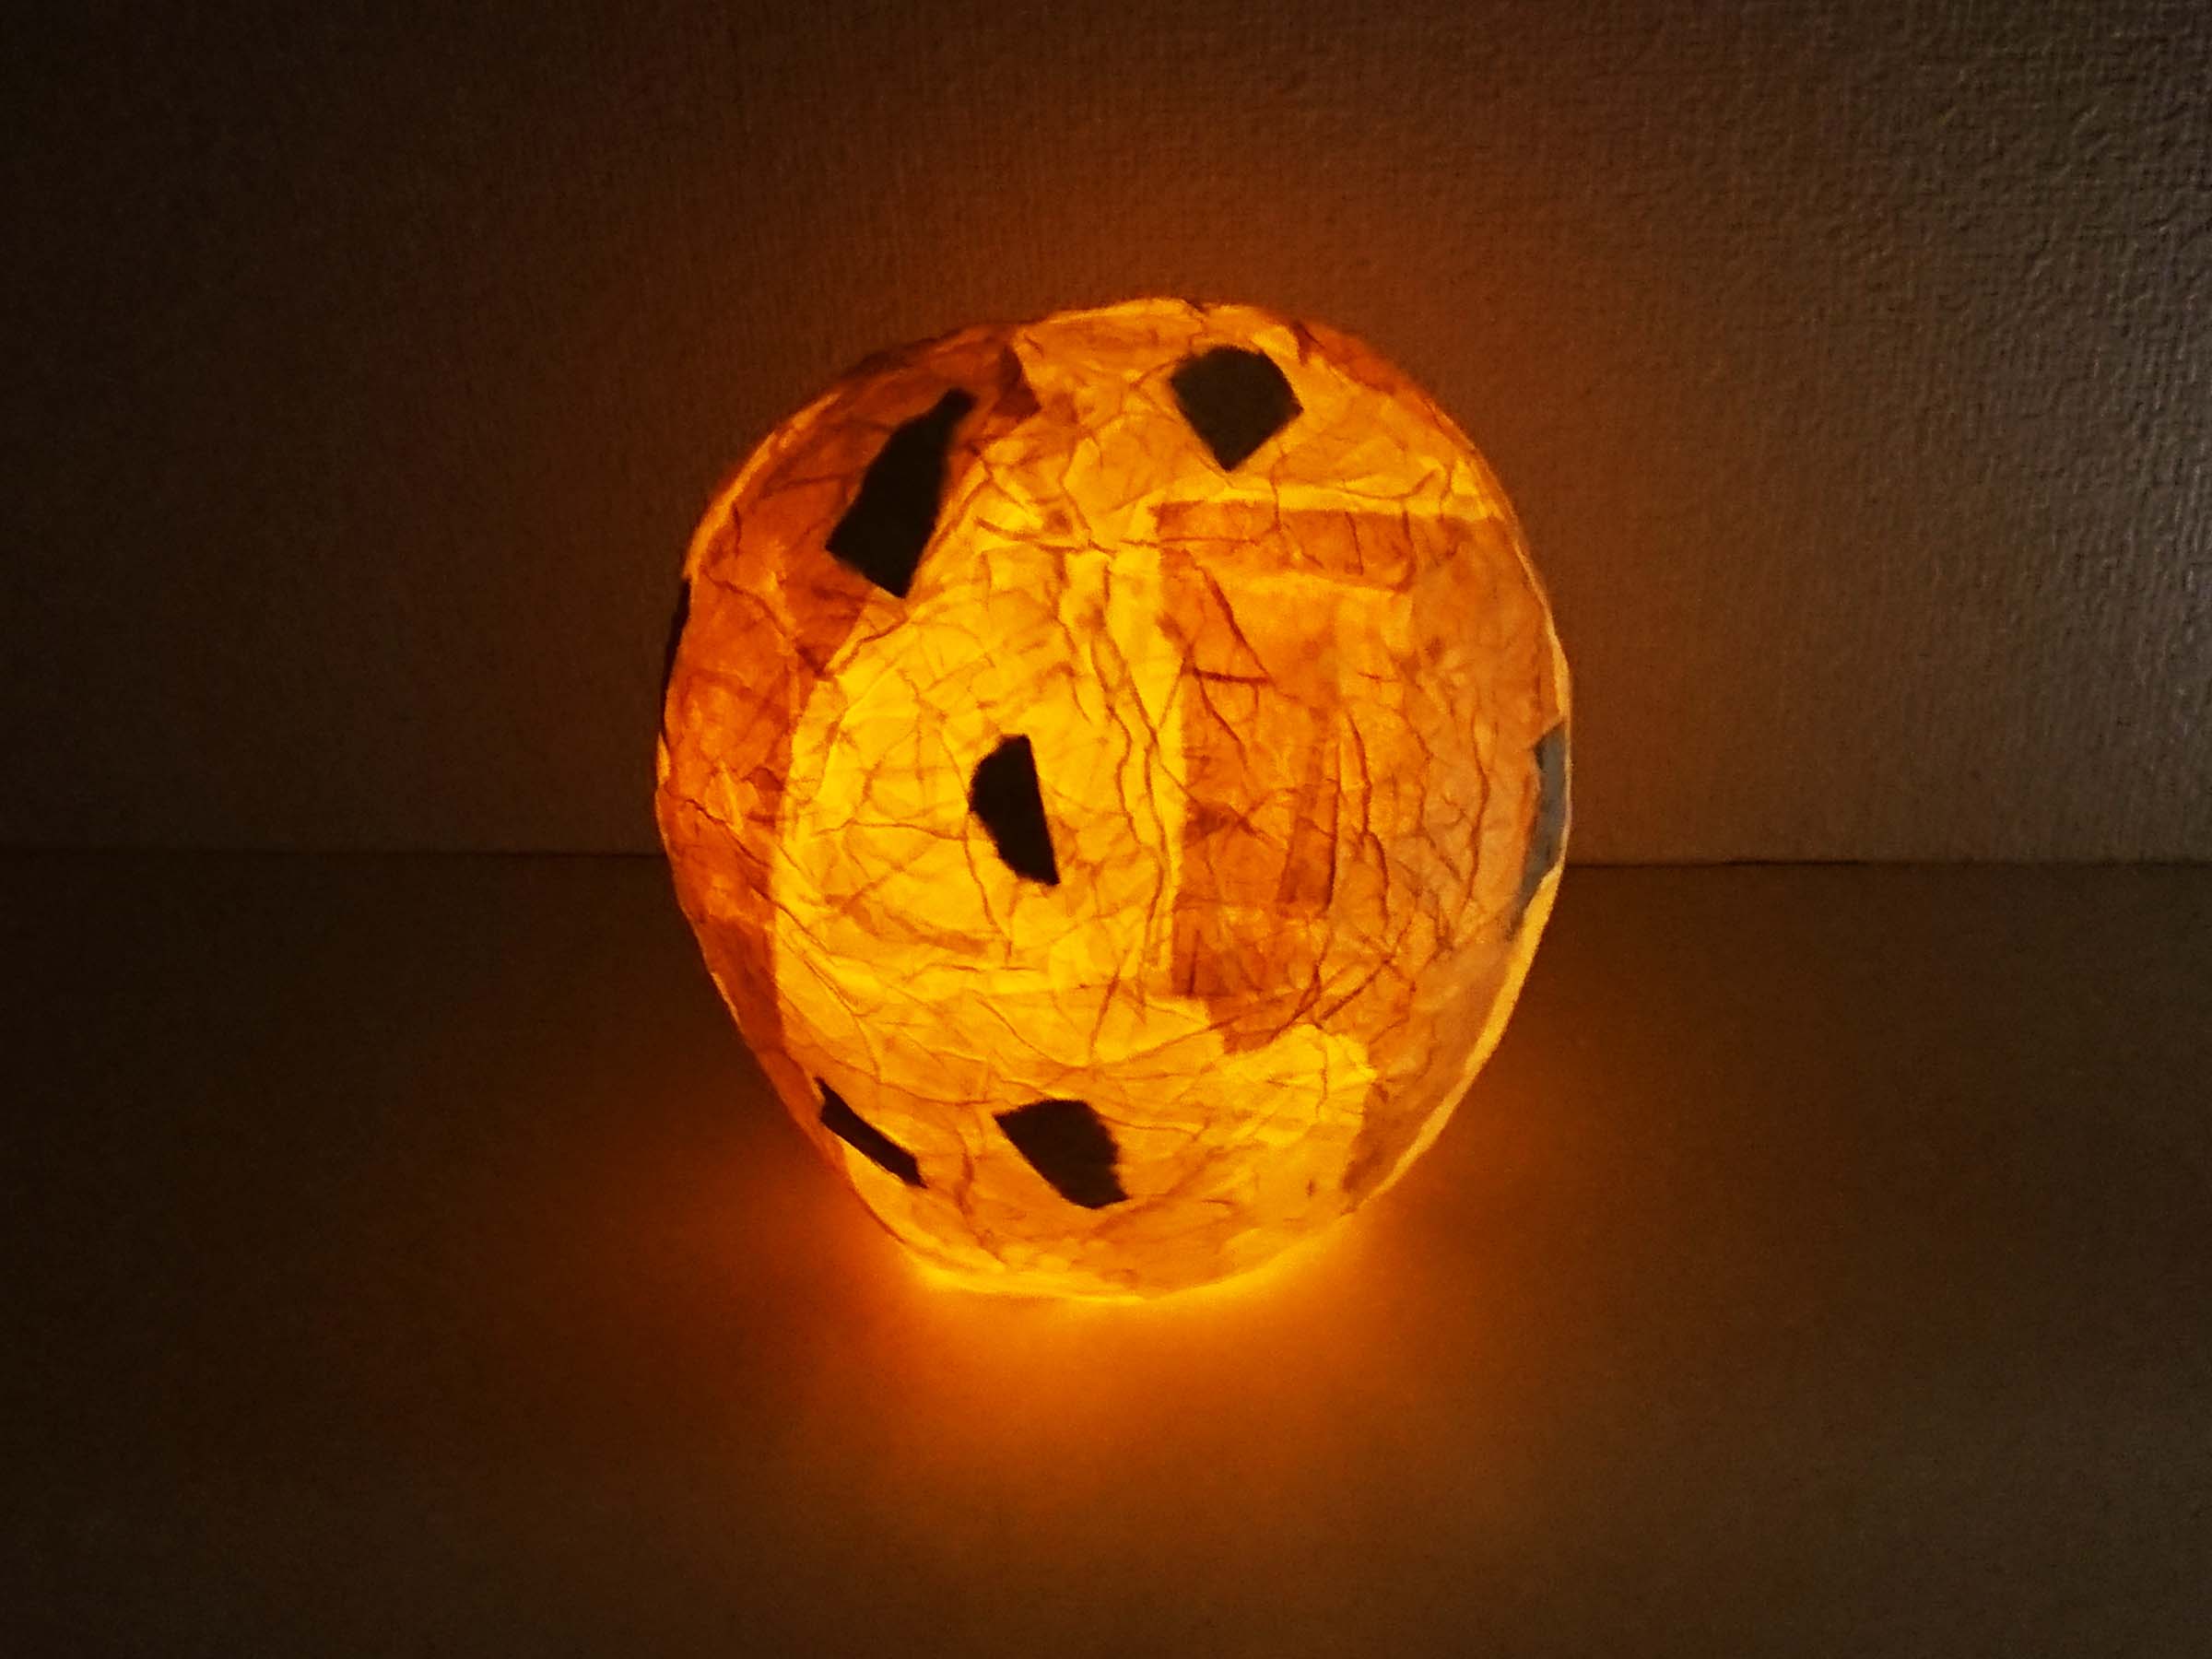 記事 ランプシェードを手作り 和紙を貼って自作地球儀型ランプの作り方 かまゆみのアートな生活 アートクリエイター 子供絵画工作専門家